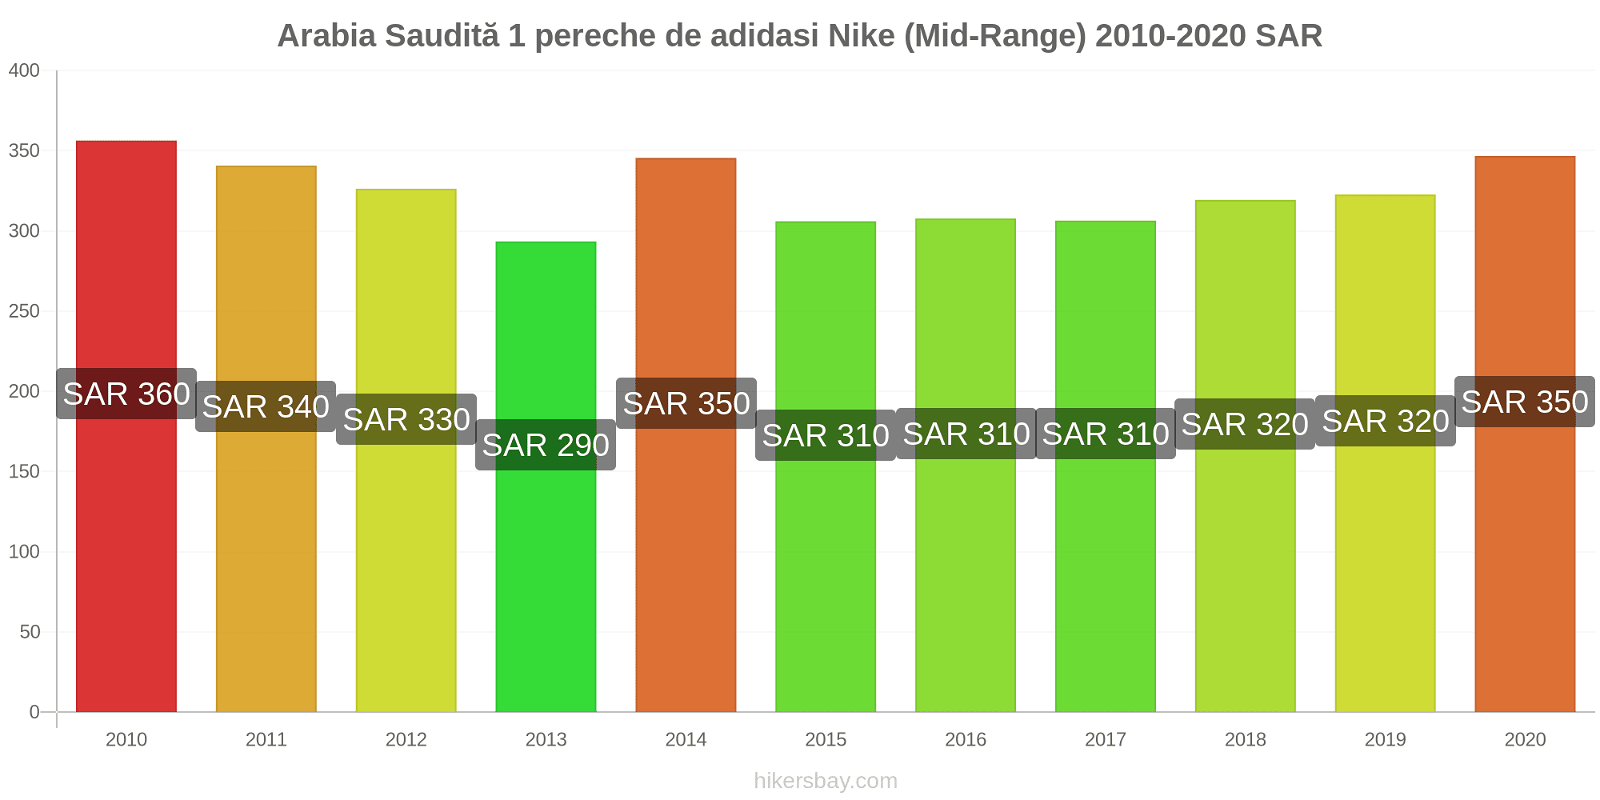 Arabia Saudită modificări de preț 1 pereche de adidasi Nike (Mid-Range) hikersbay.com